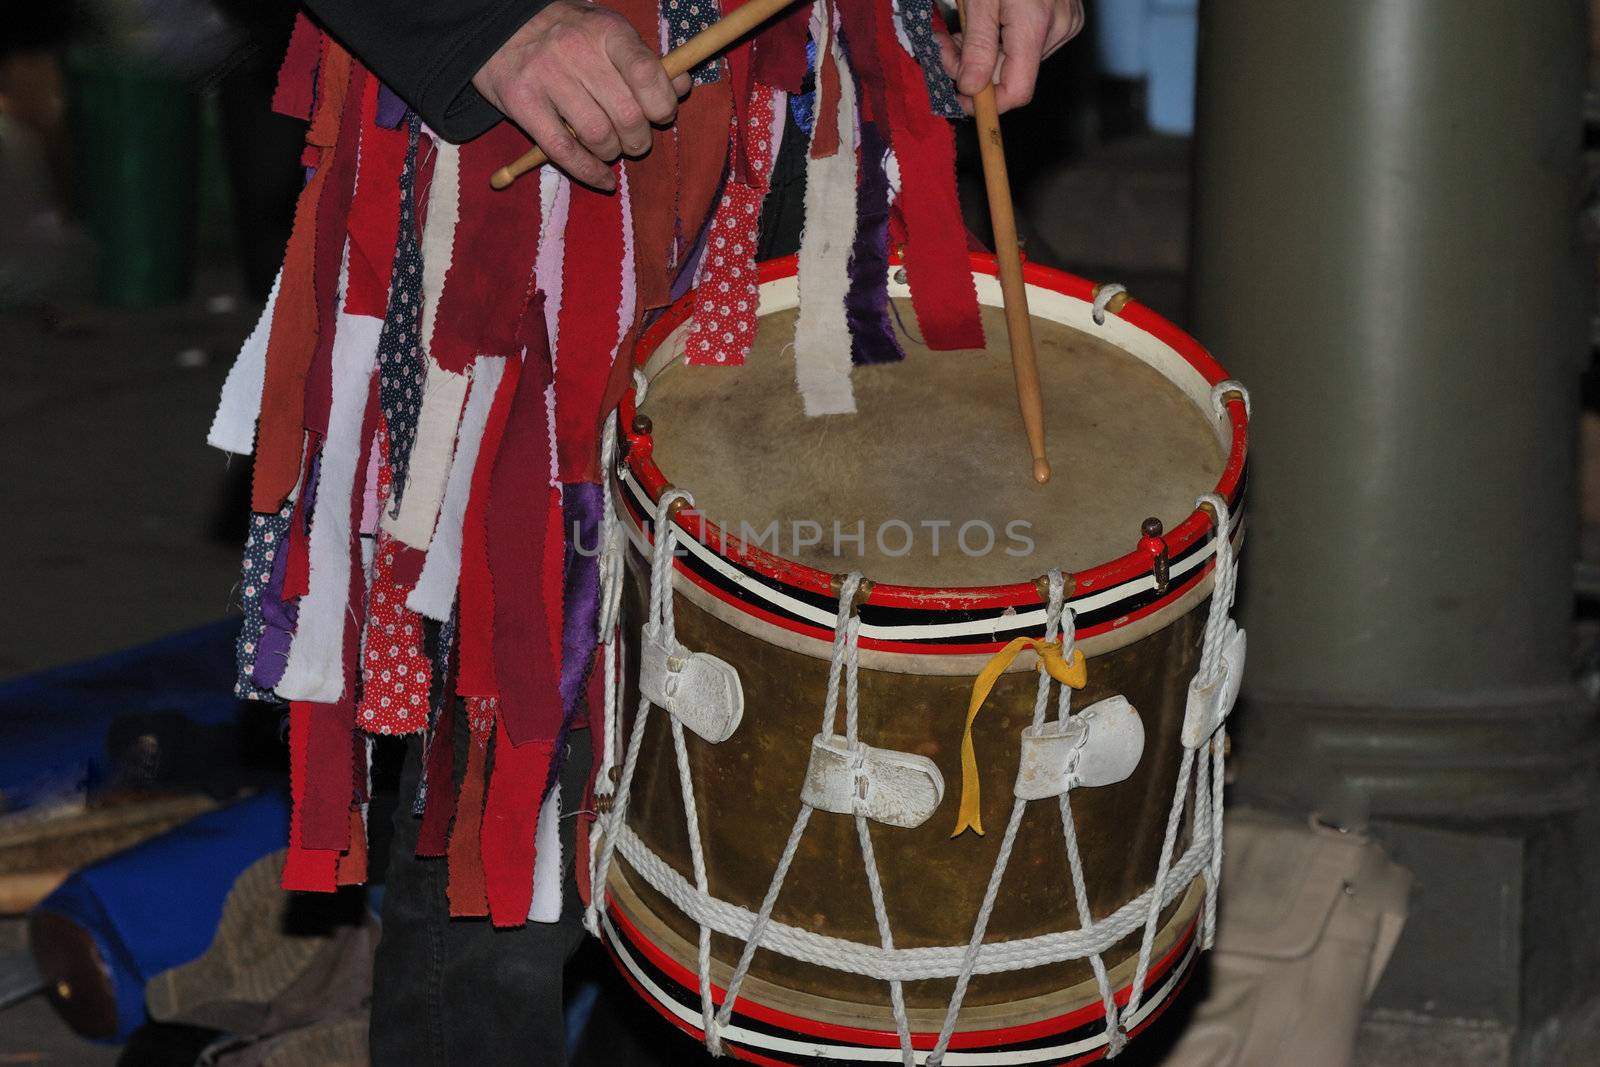 Traditional morris dancing drum